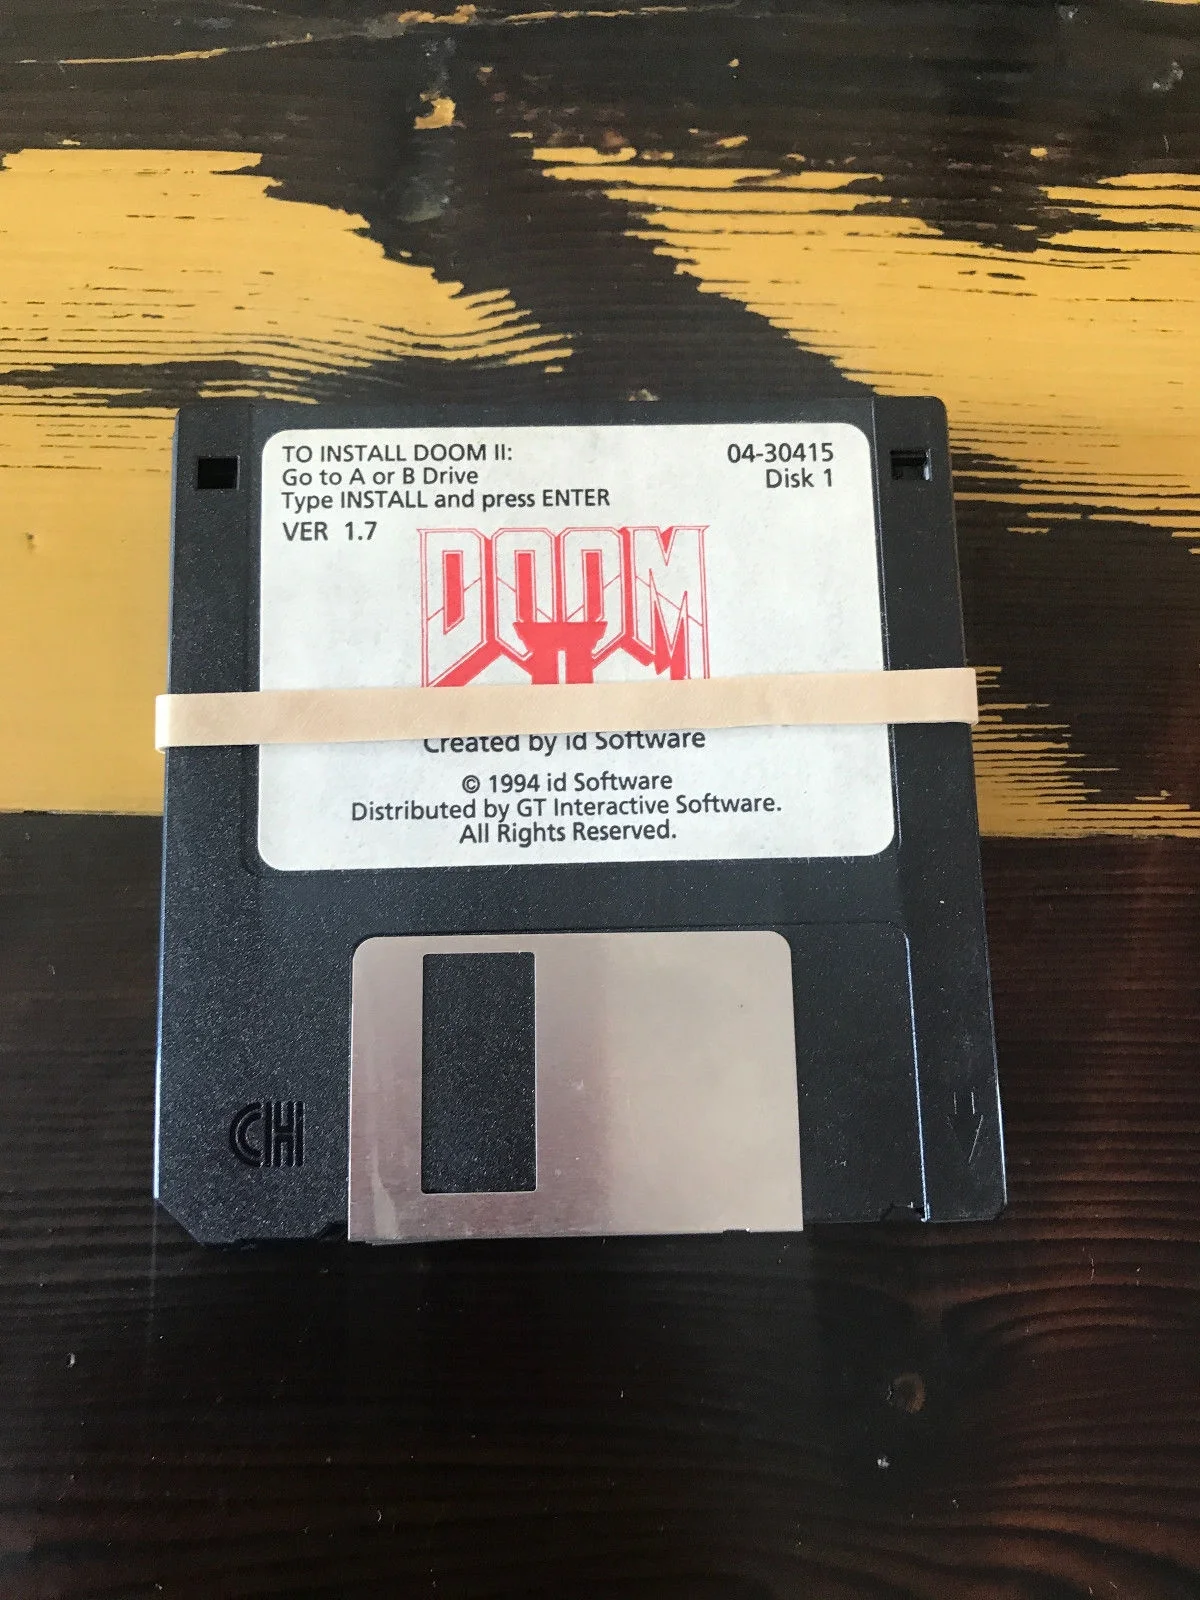 Джон Ромеро продает дискеты с Doom 2 - фото 1